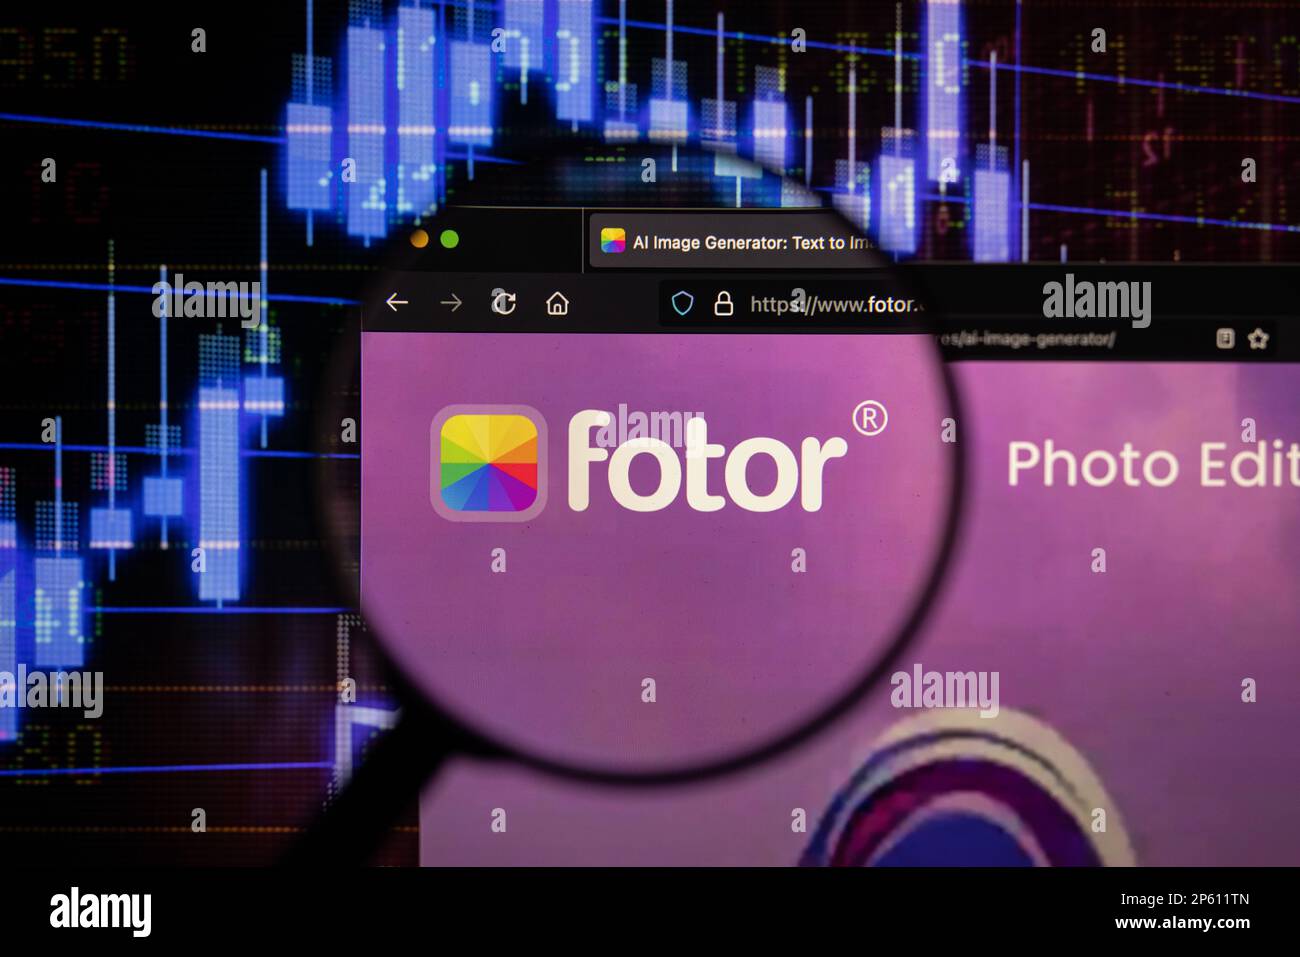 Logo della società Fotor su un sito web con blurry mercato azionario sviluppi in background, visto su uno schermo di un computer attraverso una lente di ingrandimento Foto Stock